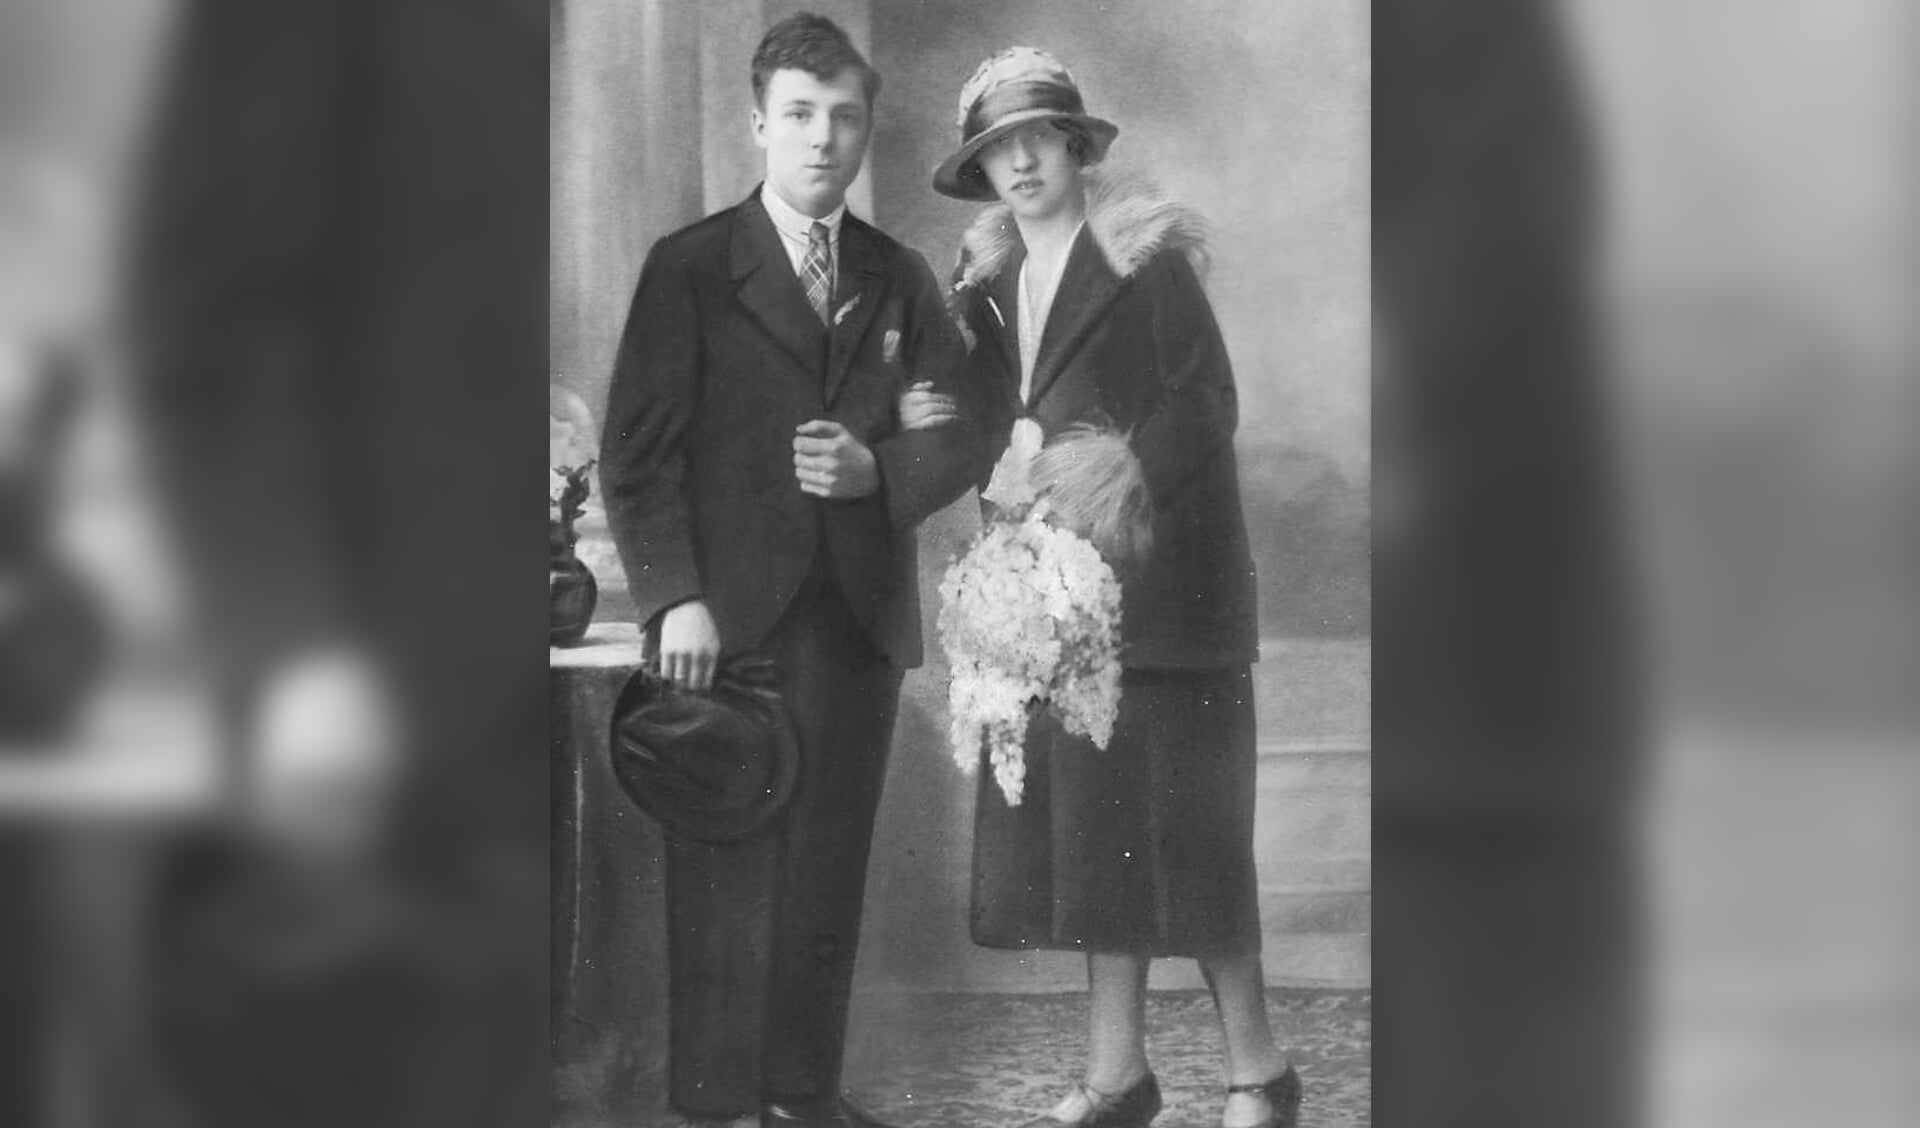 De trouwfoto van Arie en Annie Gaarenstroom uit 1927.